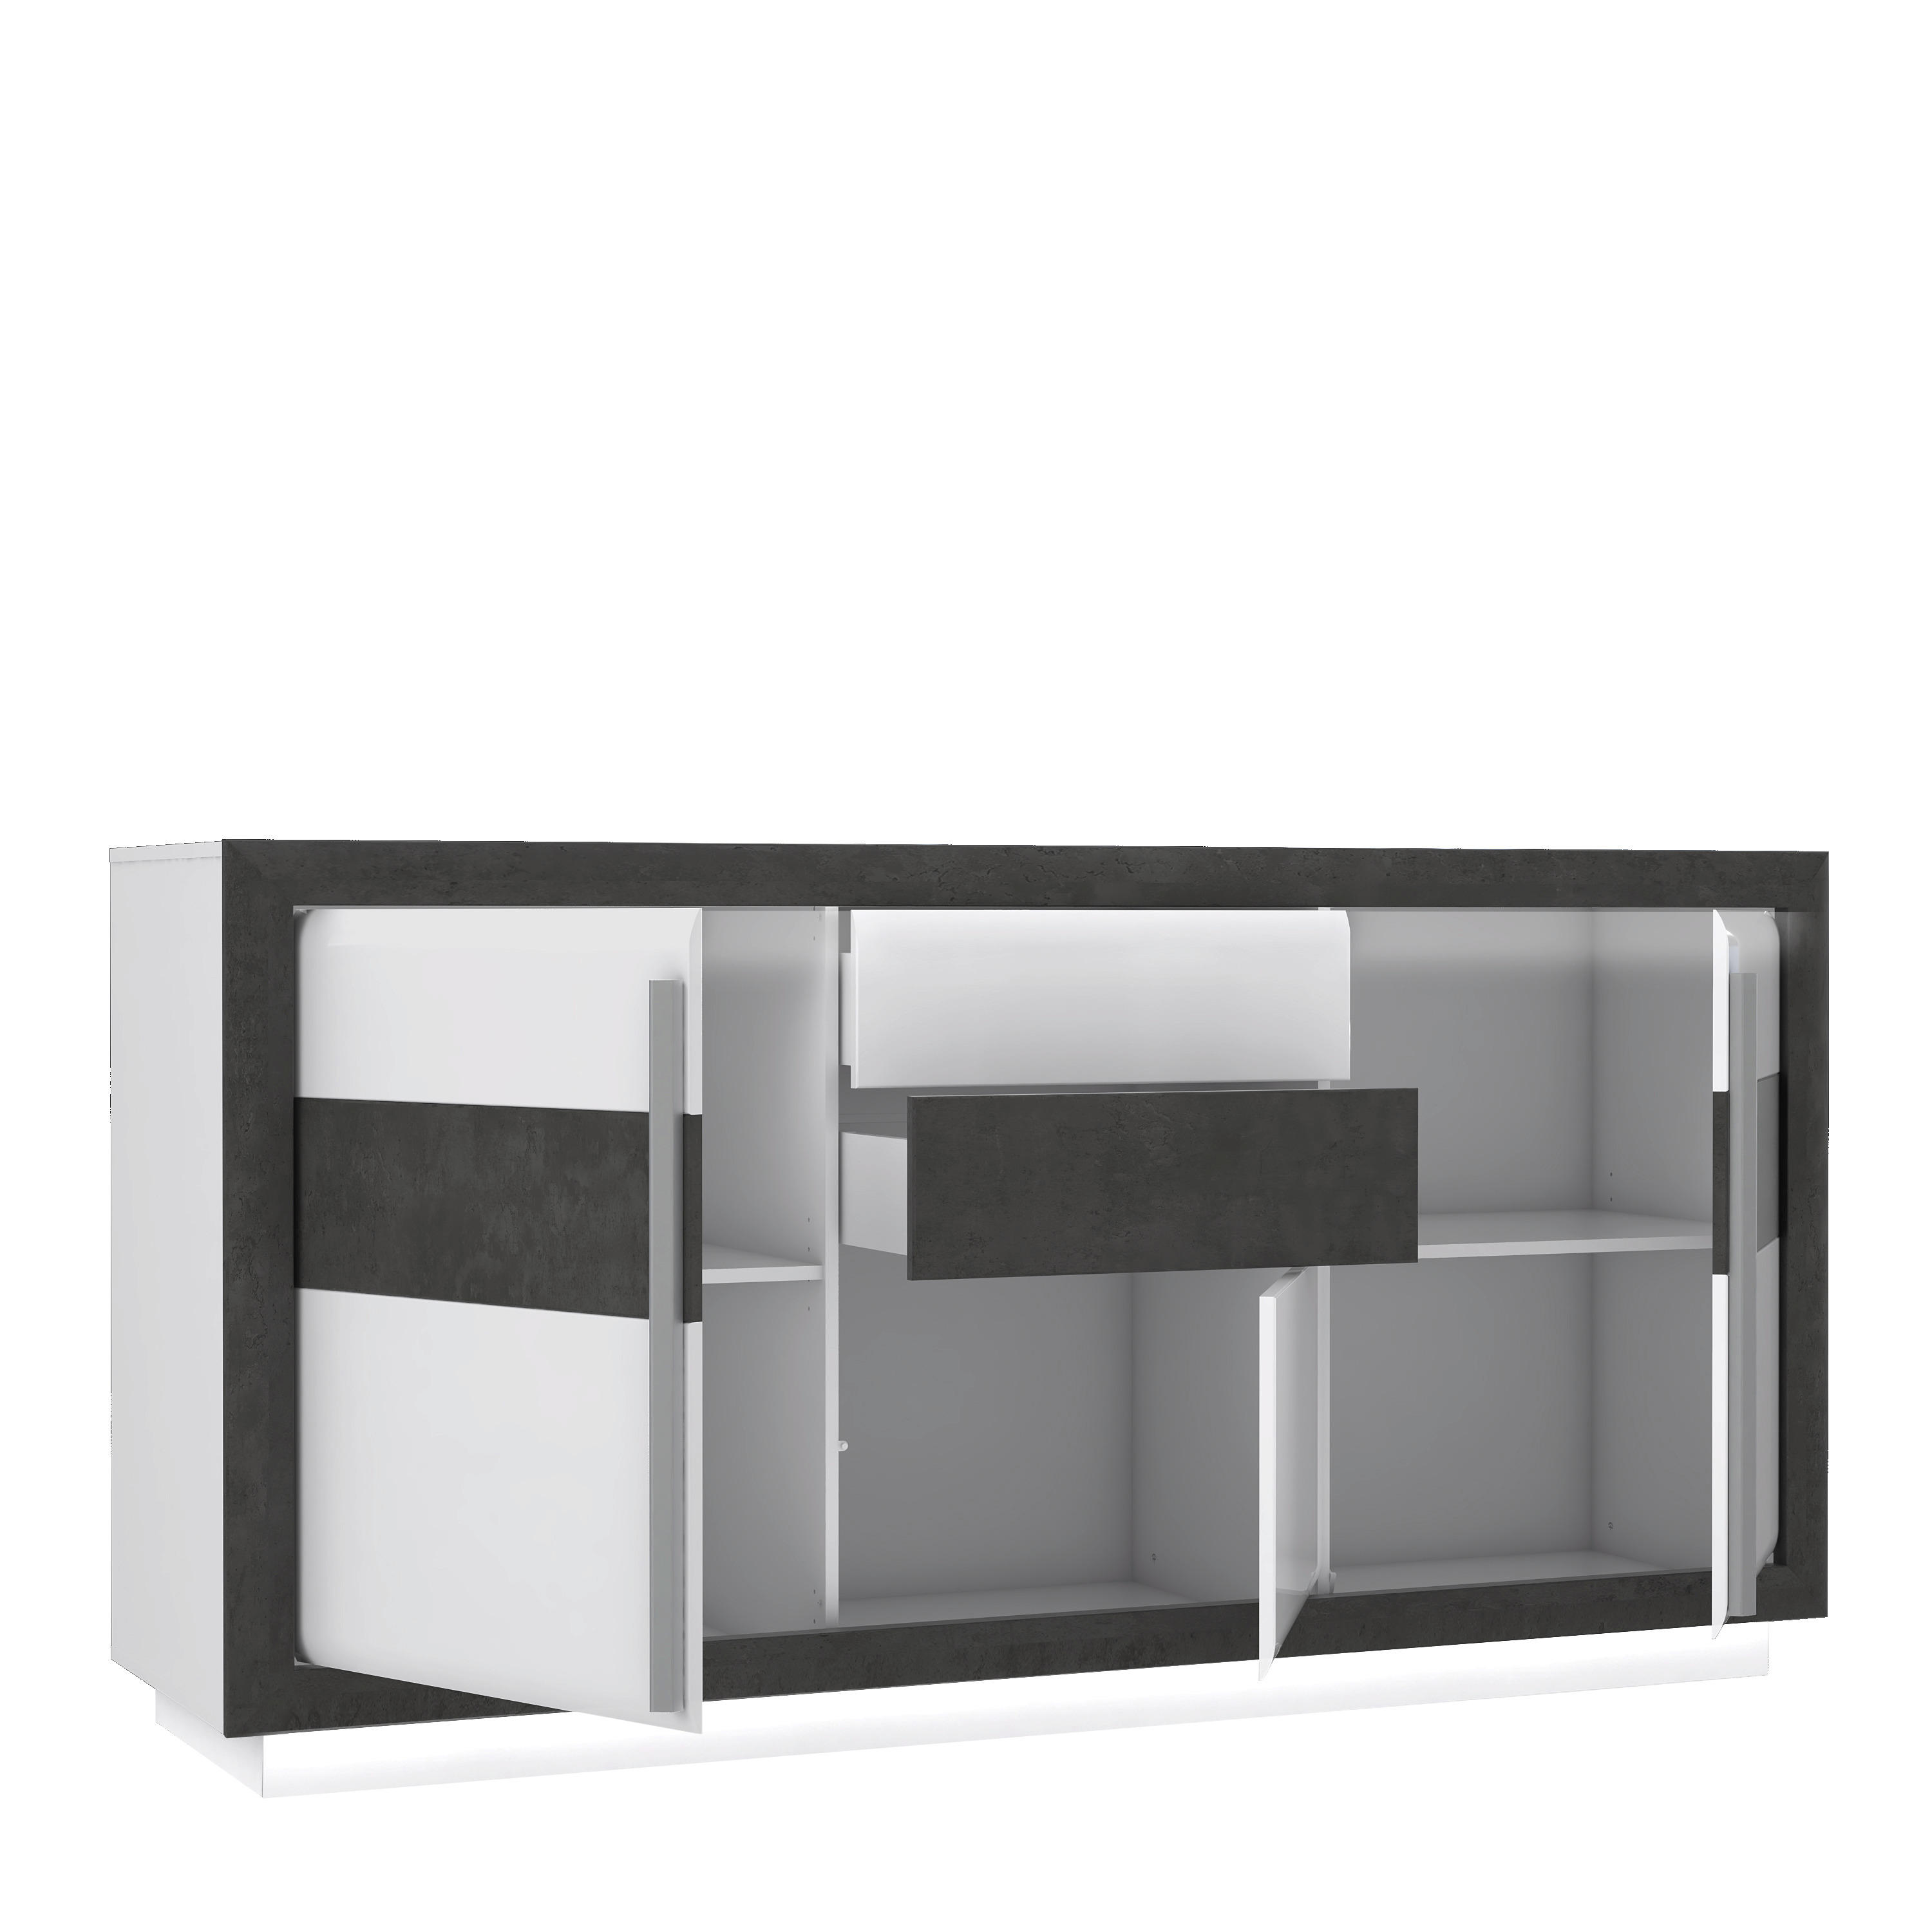 Sideboard  weiß Hochglanz Beton dunkel Optik B/H/T: ca. 193x98x53 cm Canne_Sideboard CQNK232B-C662 - weiß/Alu (193,00/98,00/53,00cm)